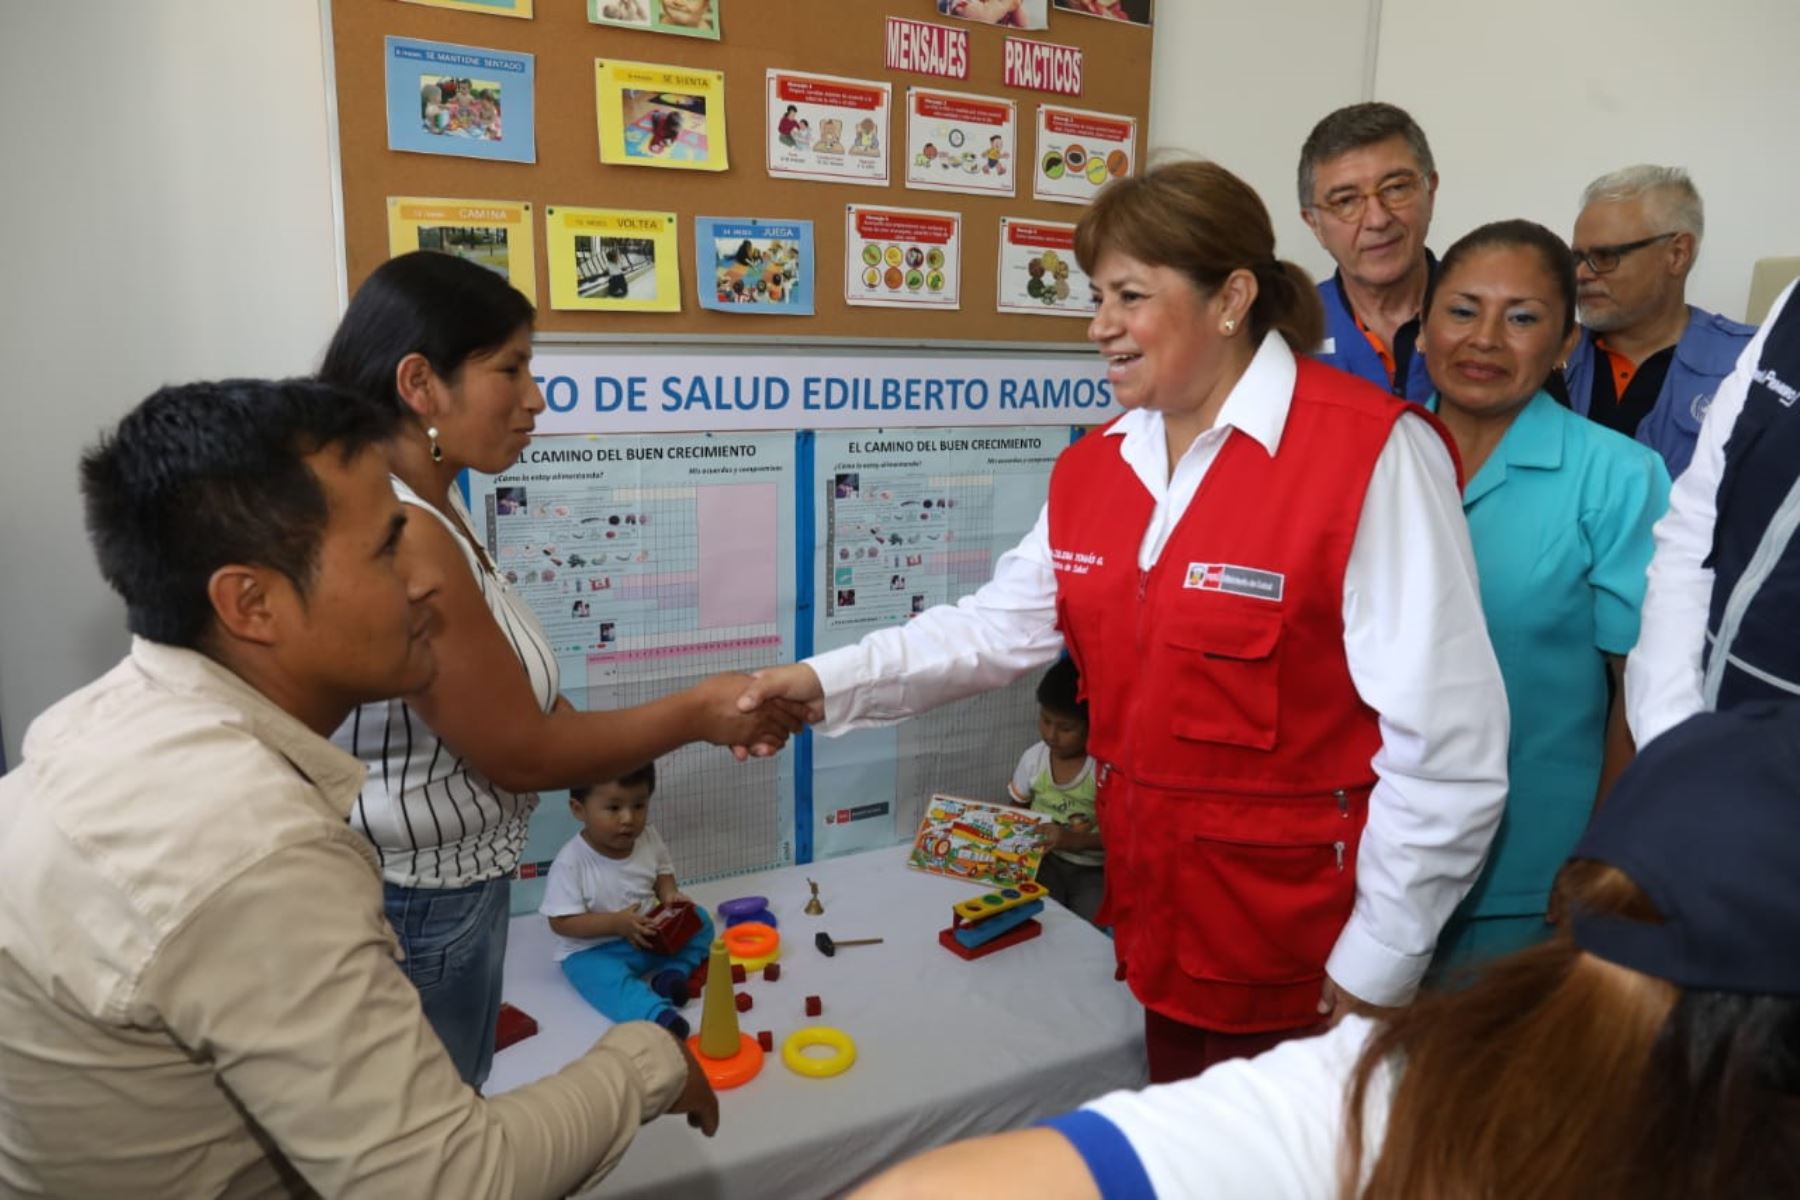 Ministra de Salud, Zulema Tomas, en el remodelado centro de salud "Edilberto Ramos" de VES. Foto: ANDINA/Difusión